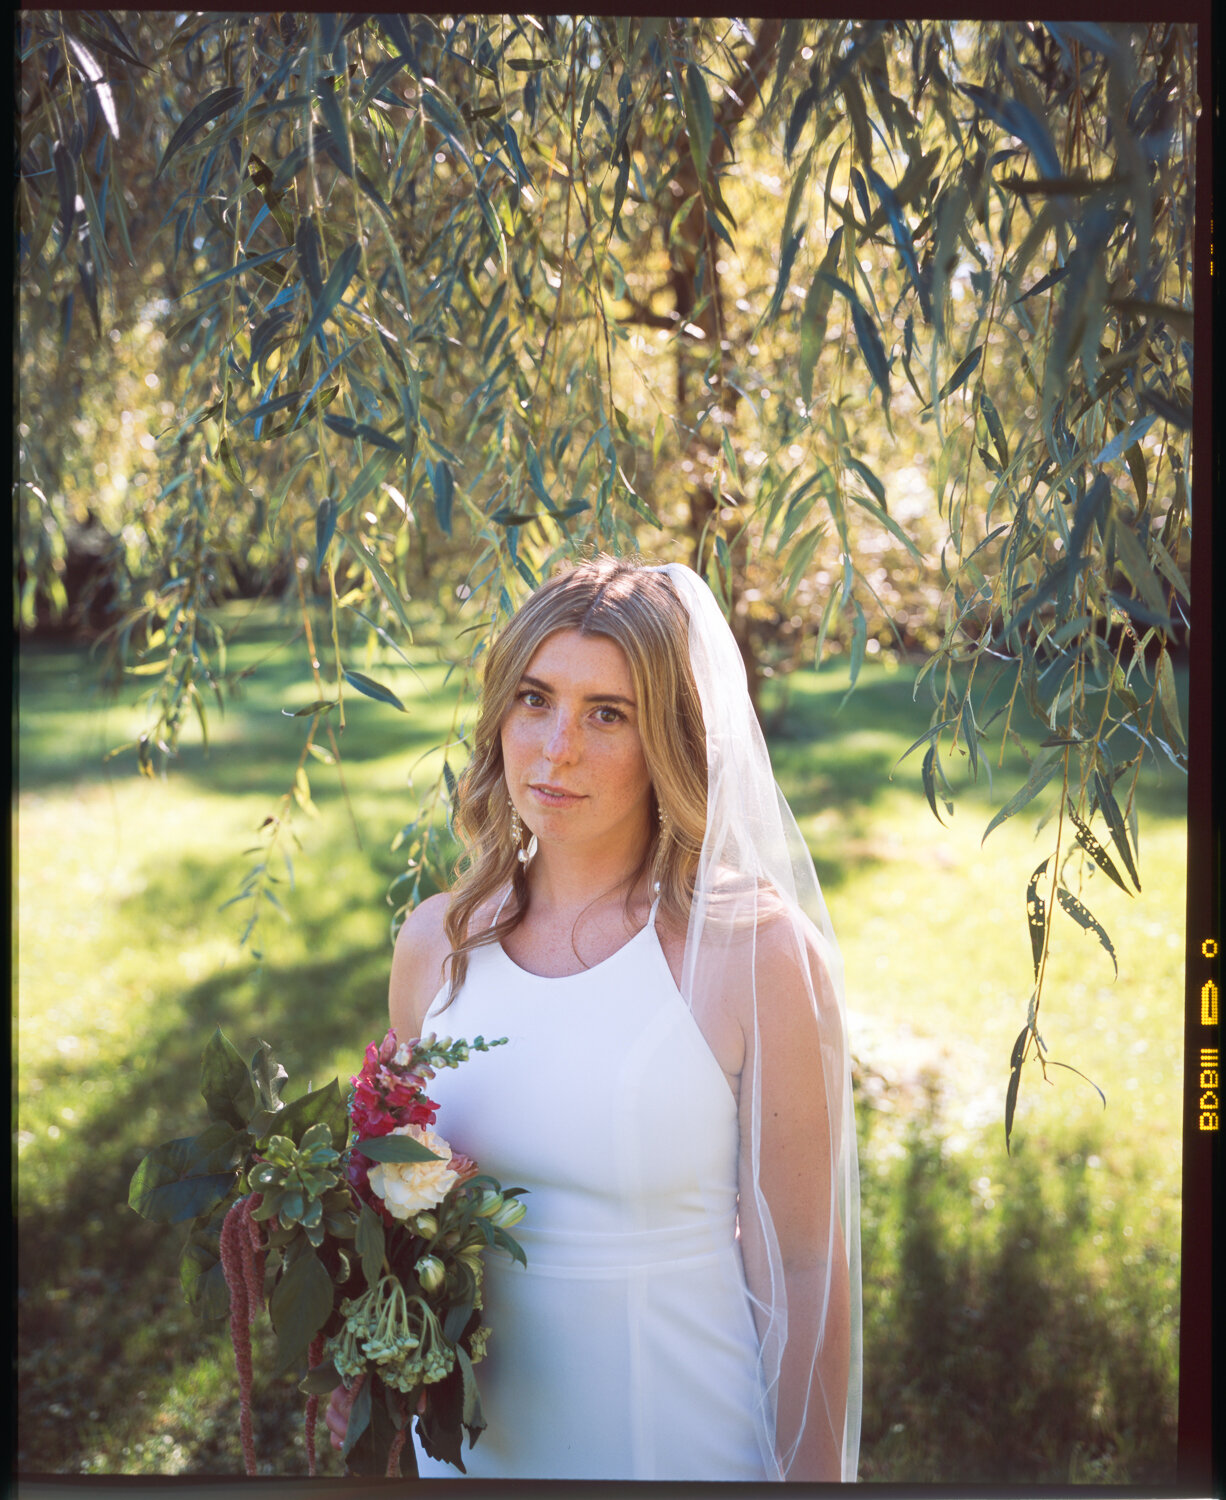 Analog-Film-Micro-Wedding-Photos-Inspiration-Backyard-Toronto-Ontario-66.JPG